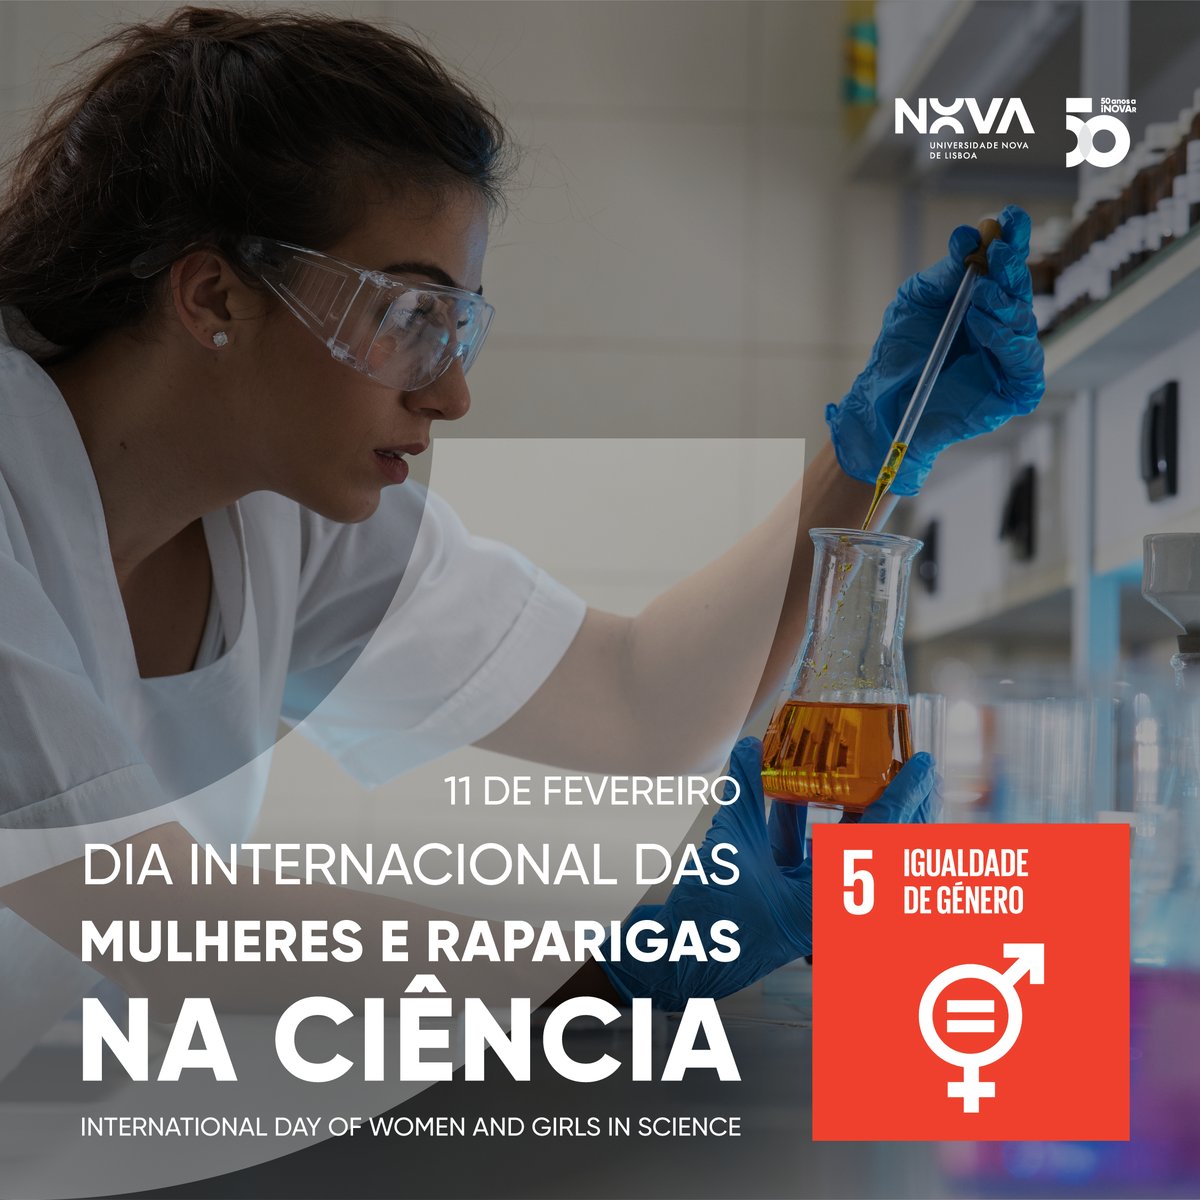 No #DiaInternacionalDasMulheresERaparigasNaCiencia, a NOVA destaca a importância da igualdade de género e reforça o seu compromisso em promover a visibilidade das conquistas das mulheres na ciência. Descubra os projetos NOVA aqui: vist.ly/33qy6